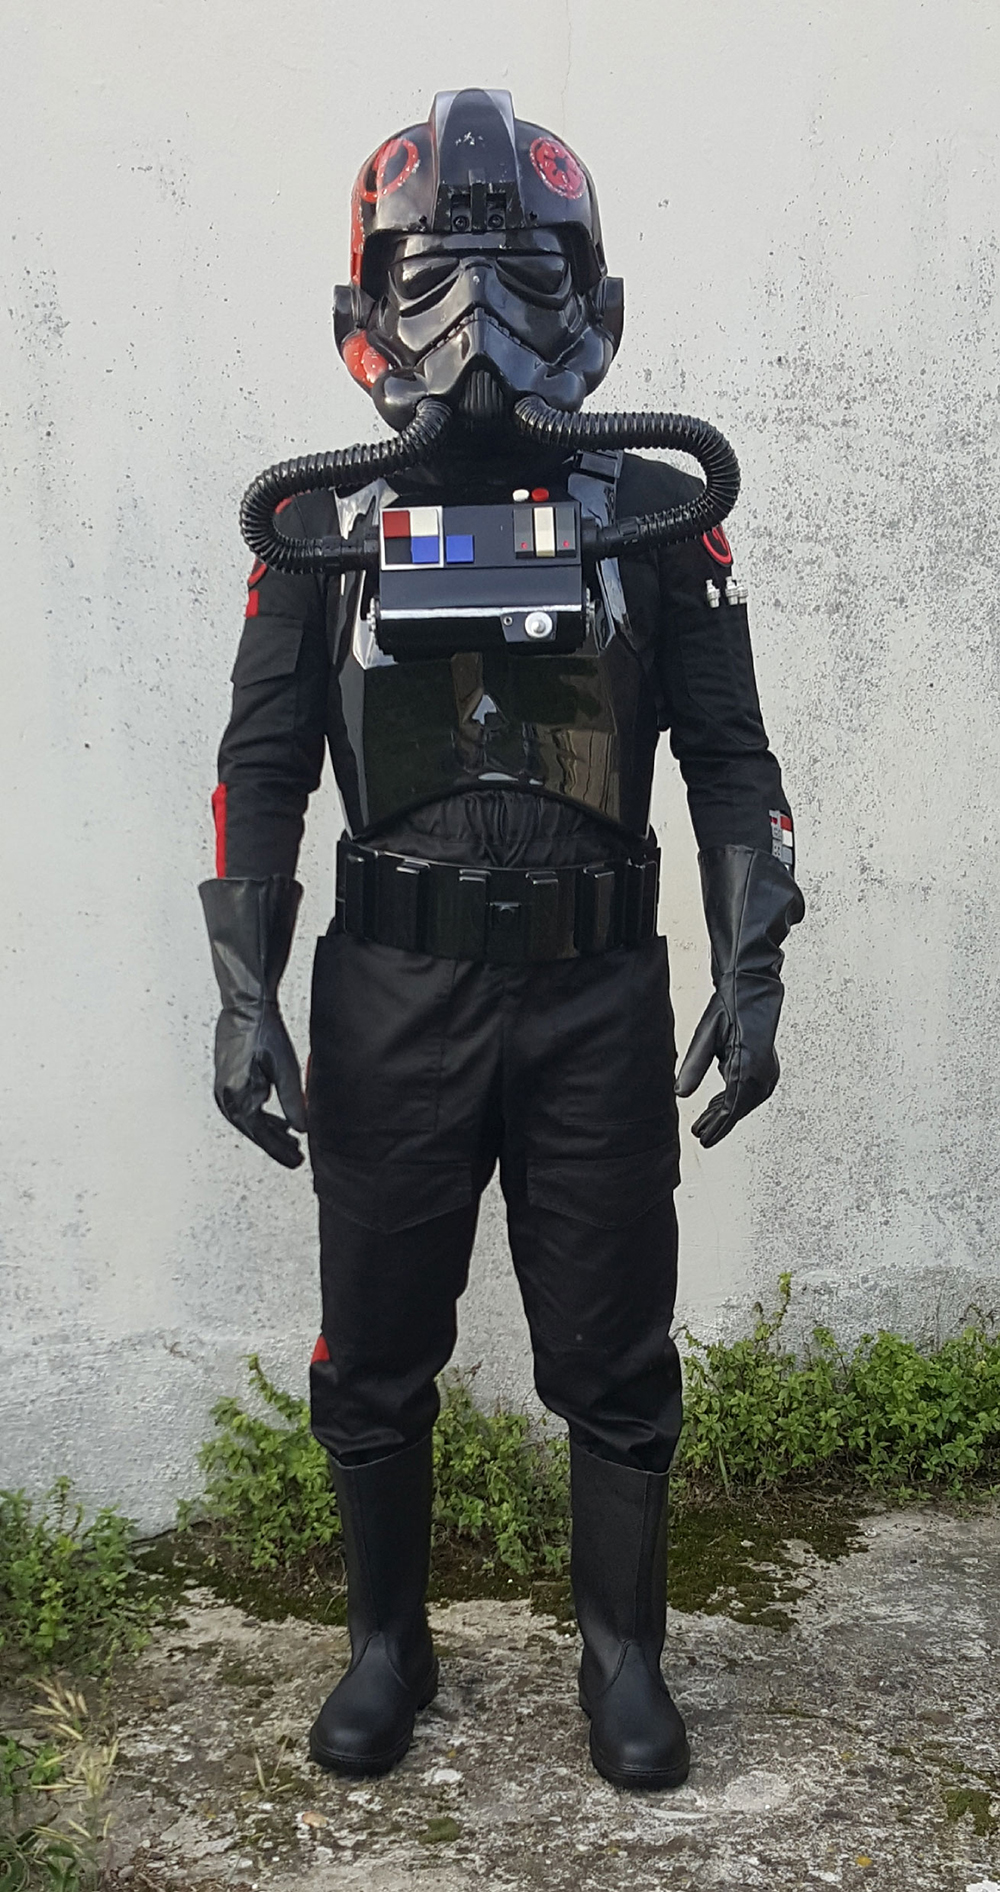 Inferno Squad TIE Pilot Replica Armour Costume Review